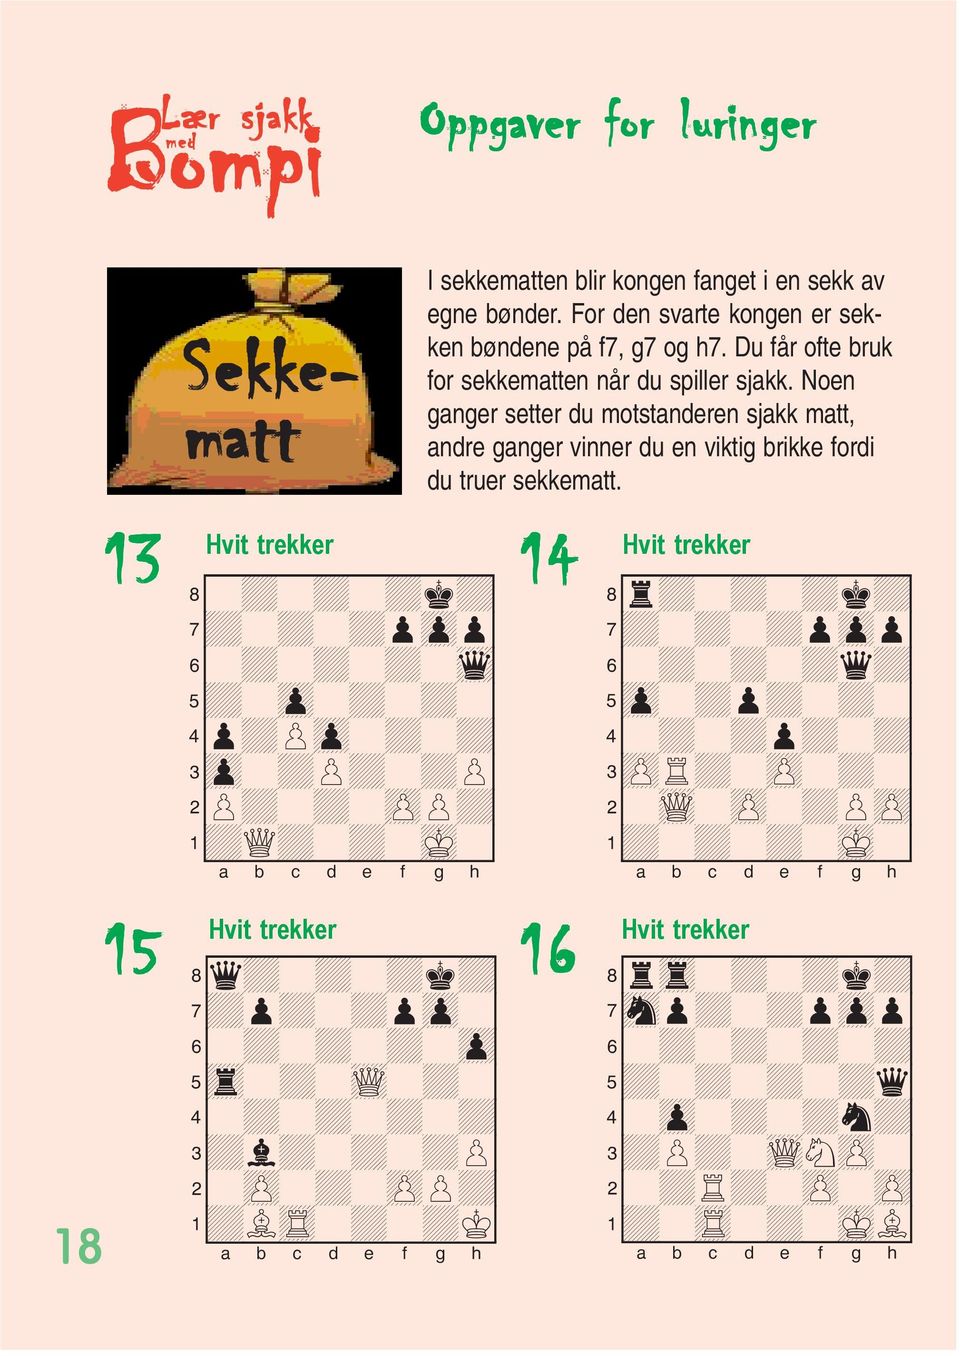 For den svarte kongen er sekken bøndene på f7, g7 og h7. Du får ofte bruk for sekkematten når du spiller sjakk.